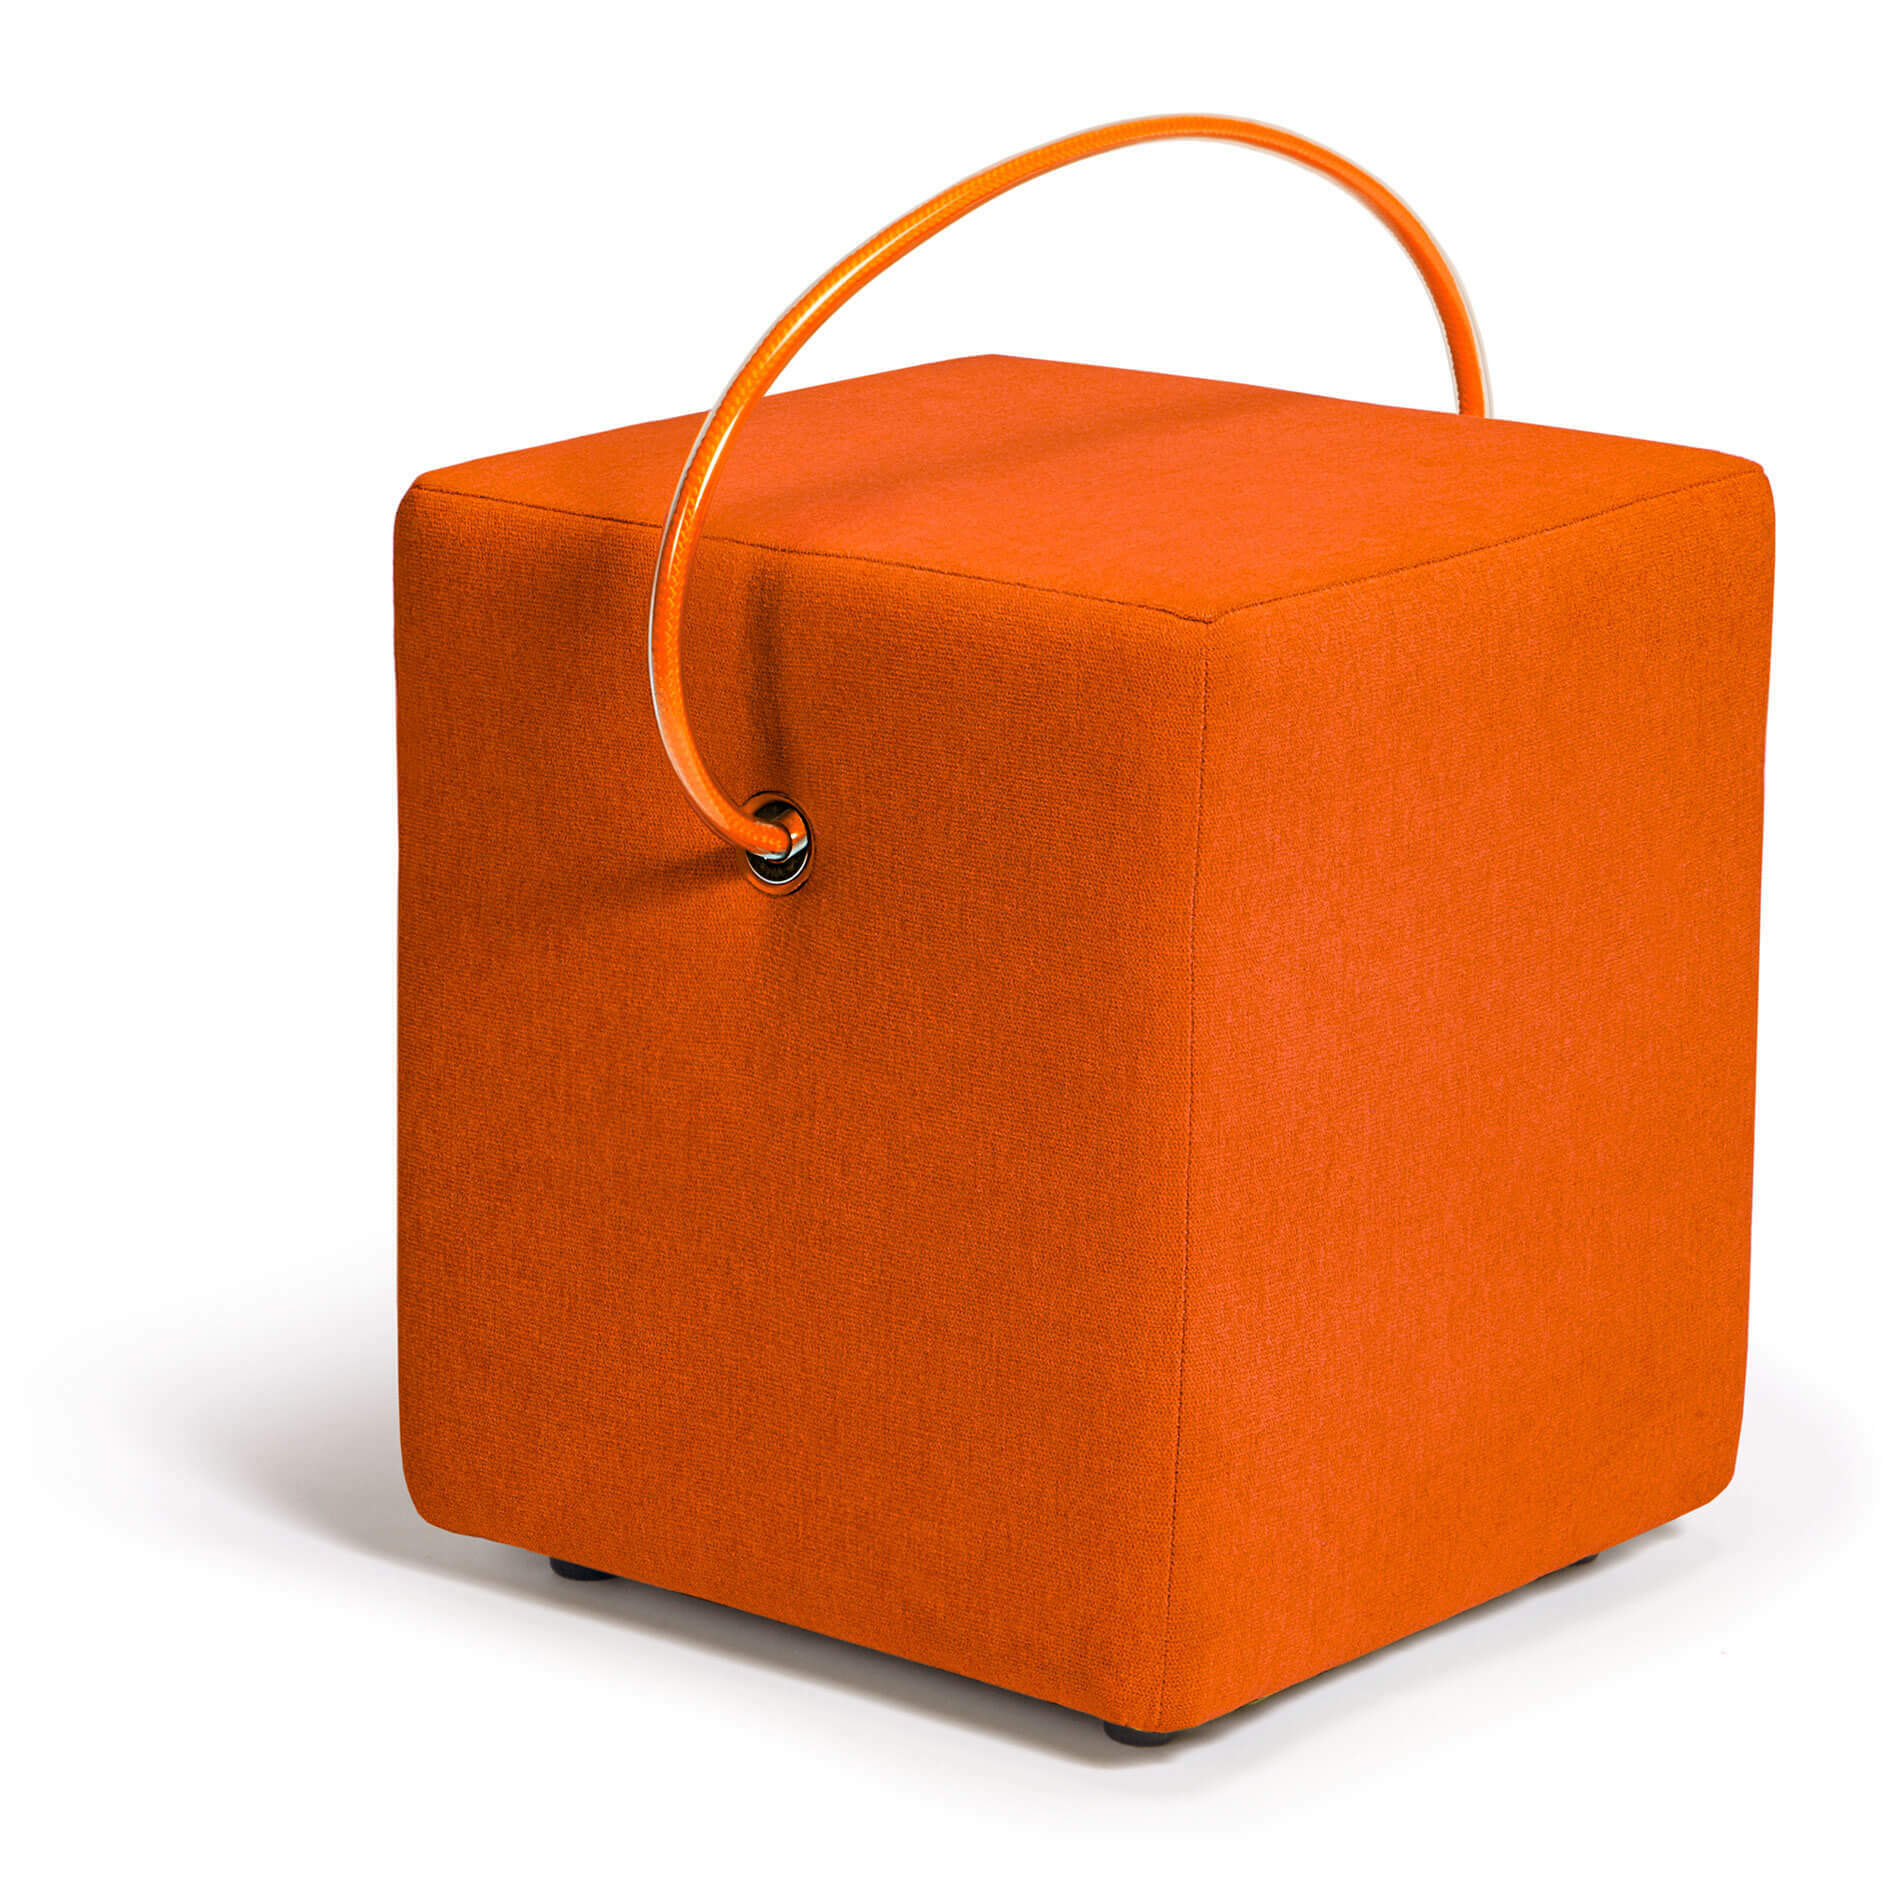 Orangefarbener Design-Hocker: Bringen Sie Wärme in Ihr Zuhause mit unserem handgefertigten, gepolsterten und leicht-tragbaren orangefarbenen Hocker. Jetzt bestellen!